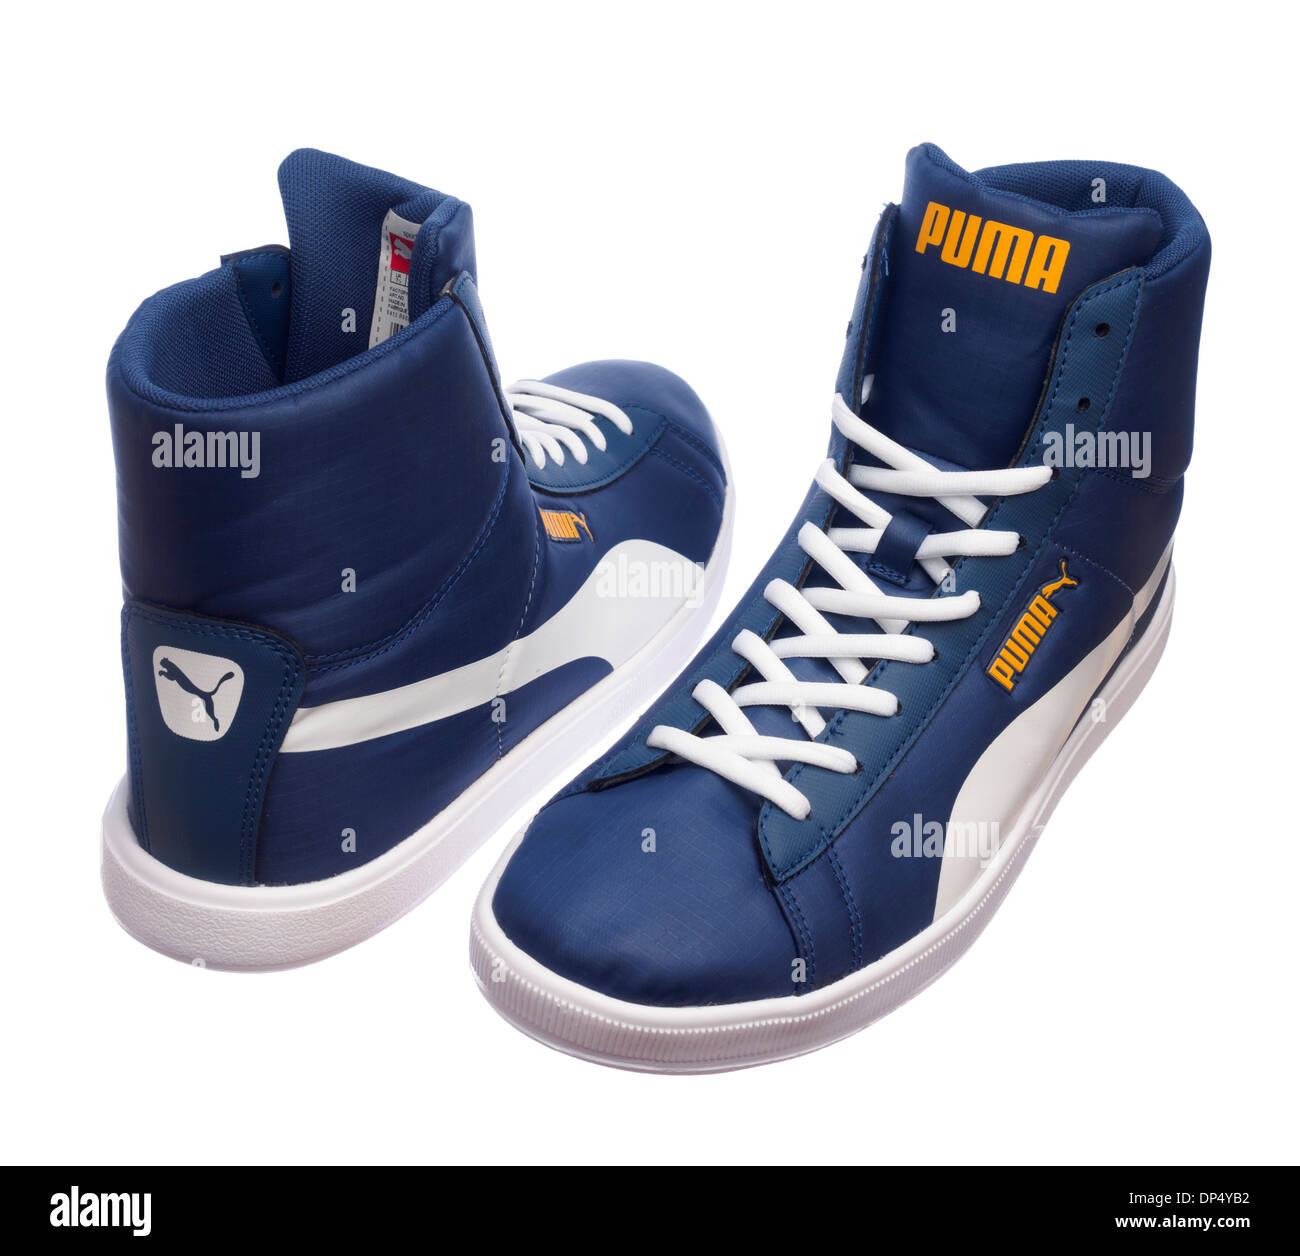 Blau retro Puma Schuhe isoliert auf weißem Hintergrund Stockfotografie -  Alamy